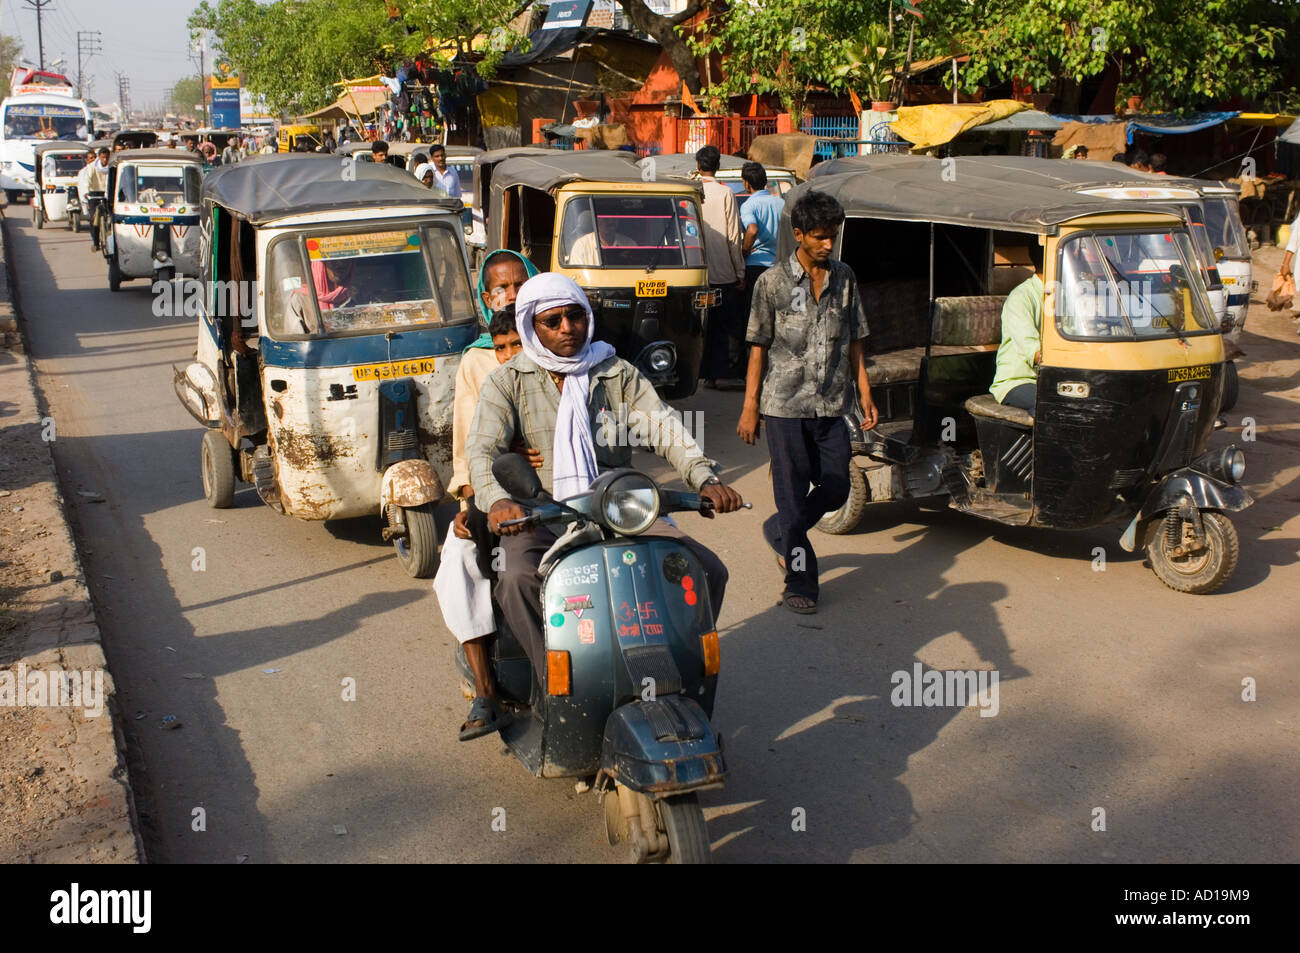 Une scène de rue chaotique typique à Varanasi avec auto-pousse (Tuk Tuks), des scooters et des gens sur les rues animées. Banque D'Images